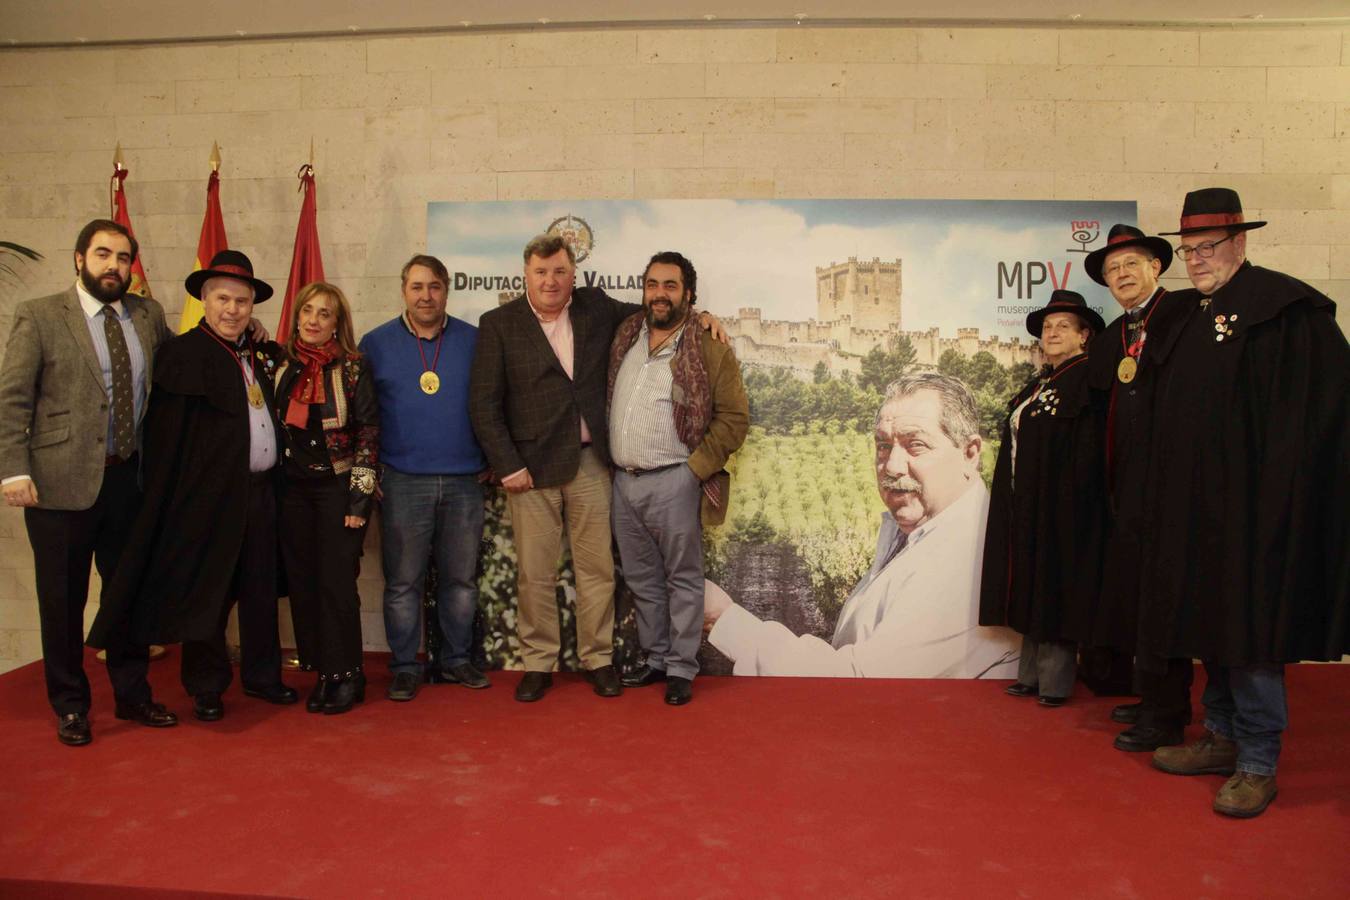 La Diputación de Valladolid pone su nombre a la sala de catas del centro museístico